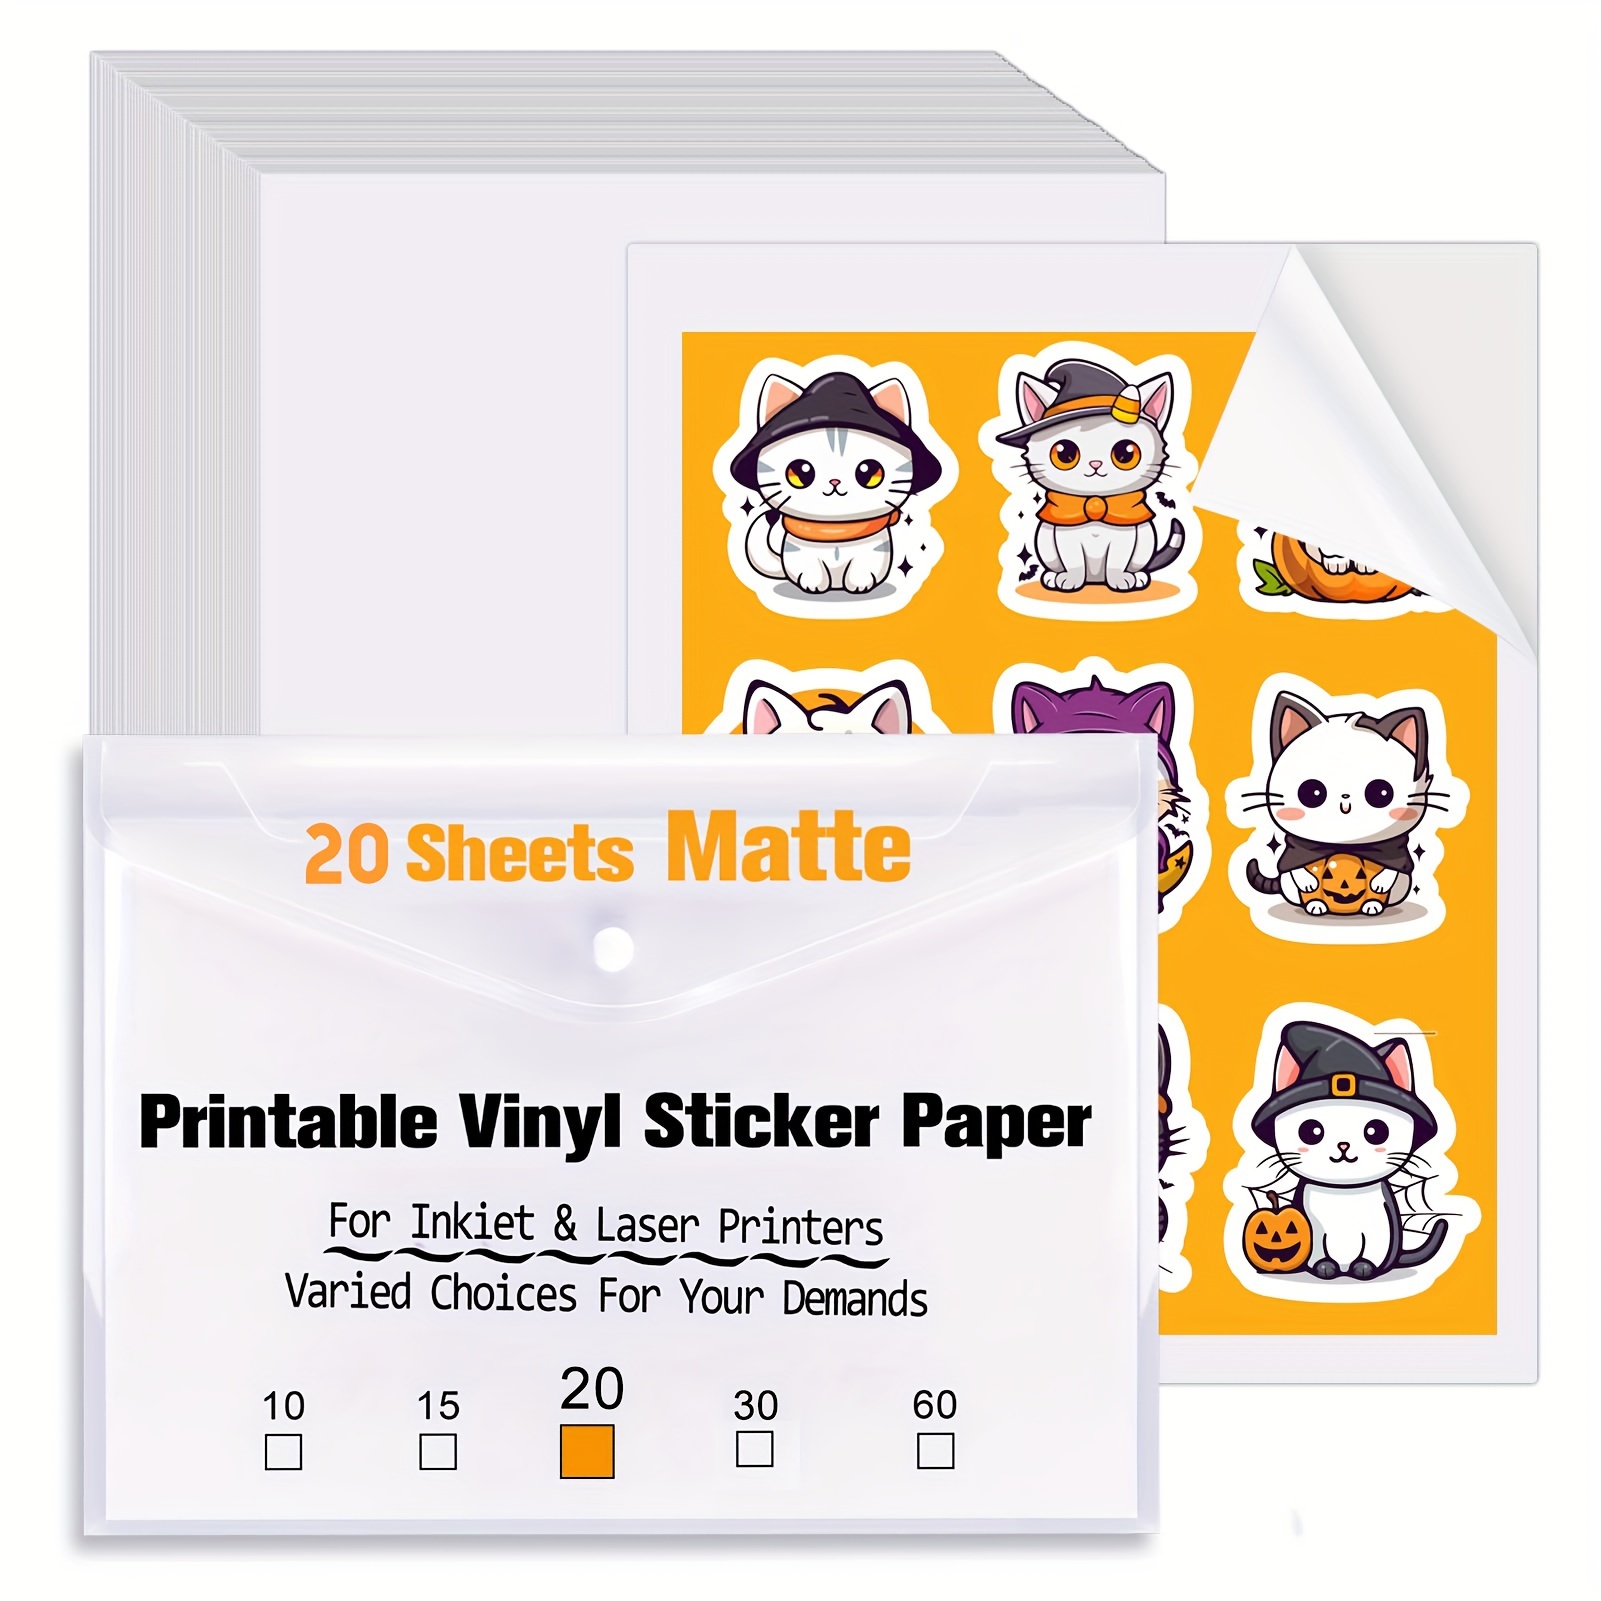 Glossy Printable Vinyl 200 Sheets for Inkjet Printer Sticker Paper